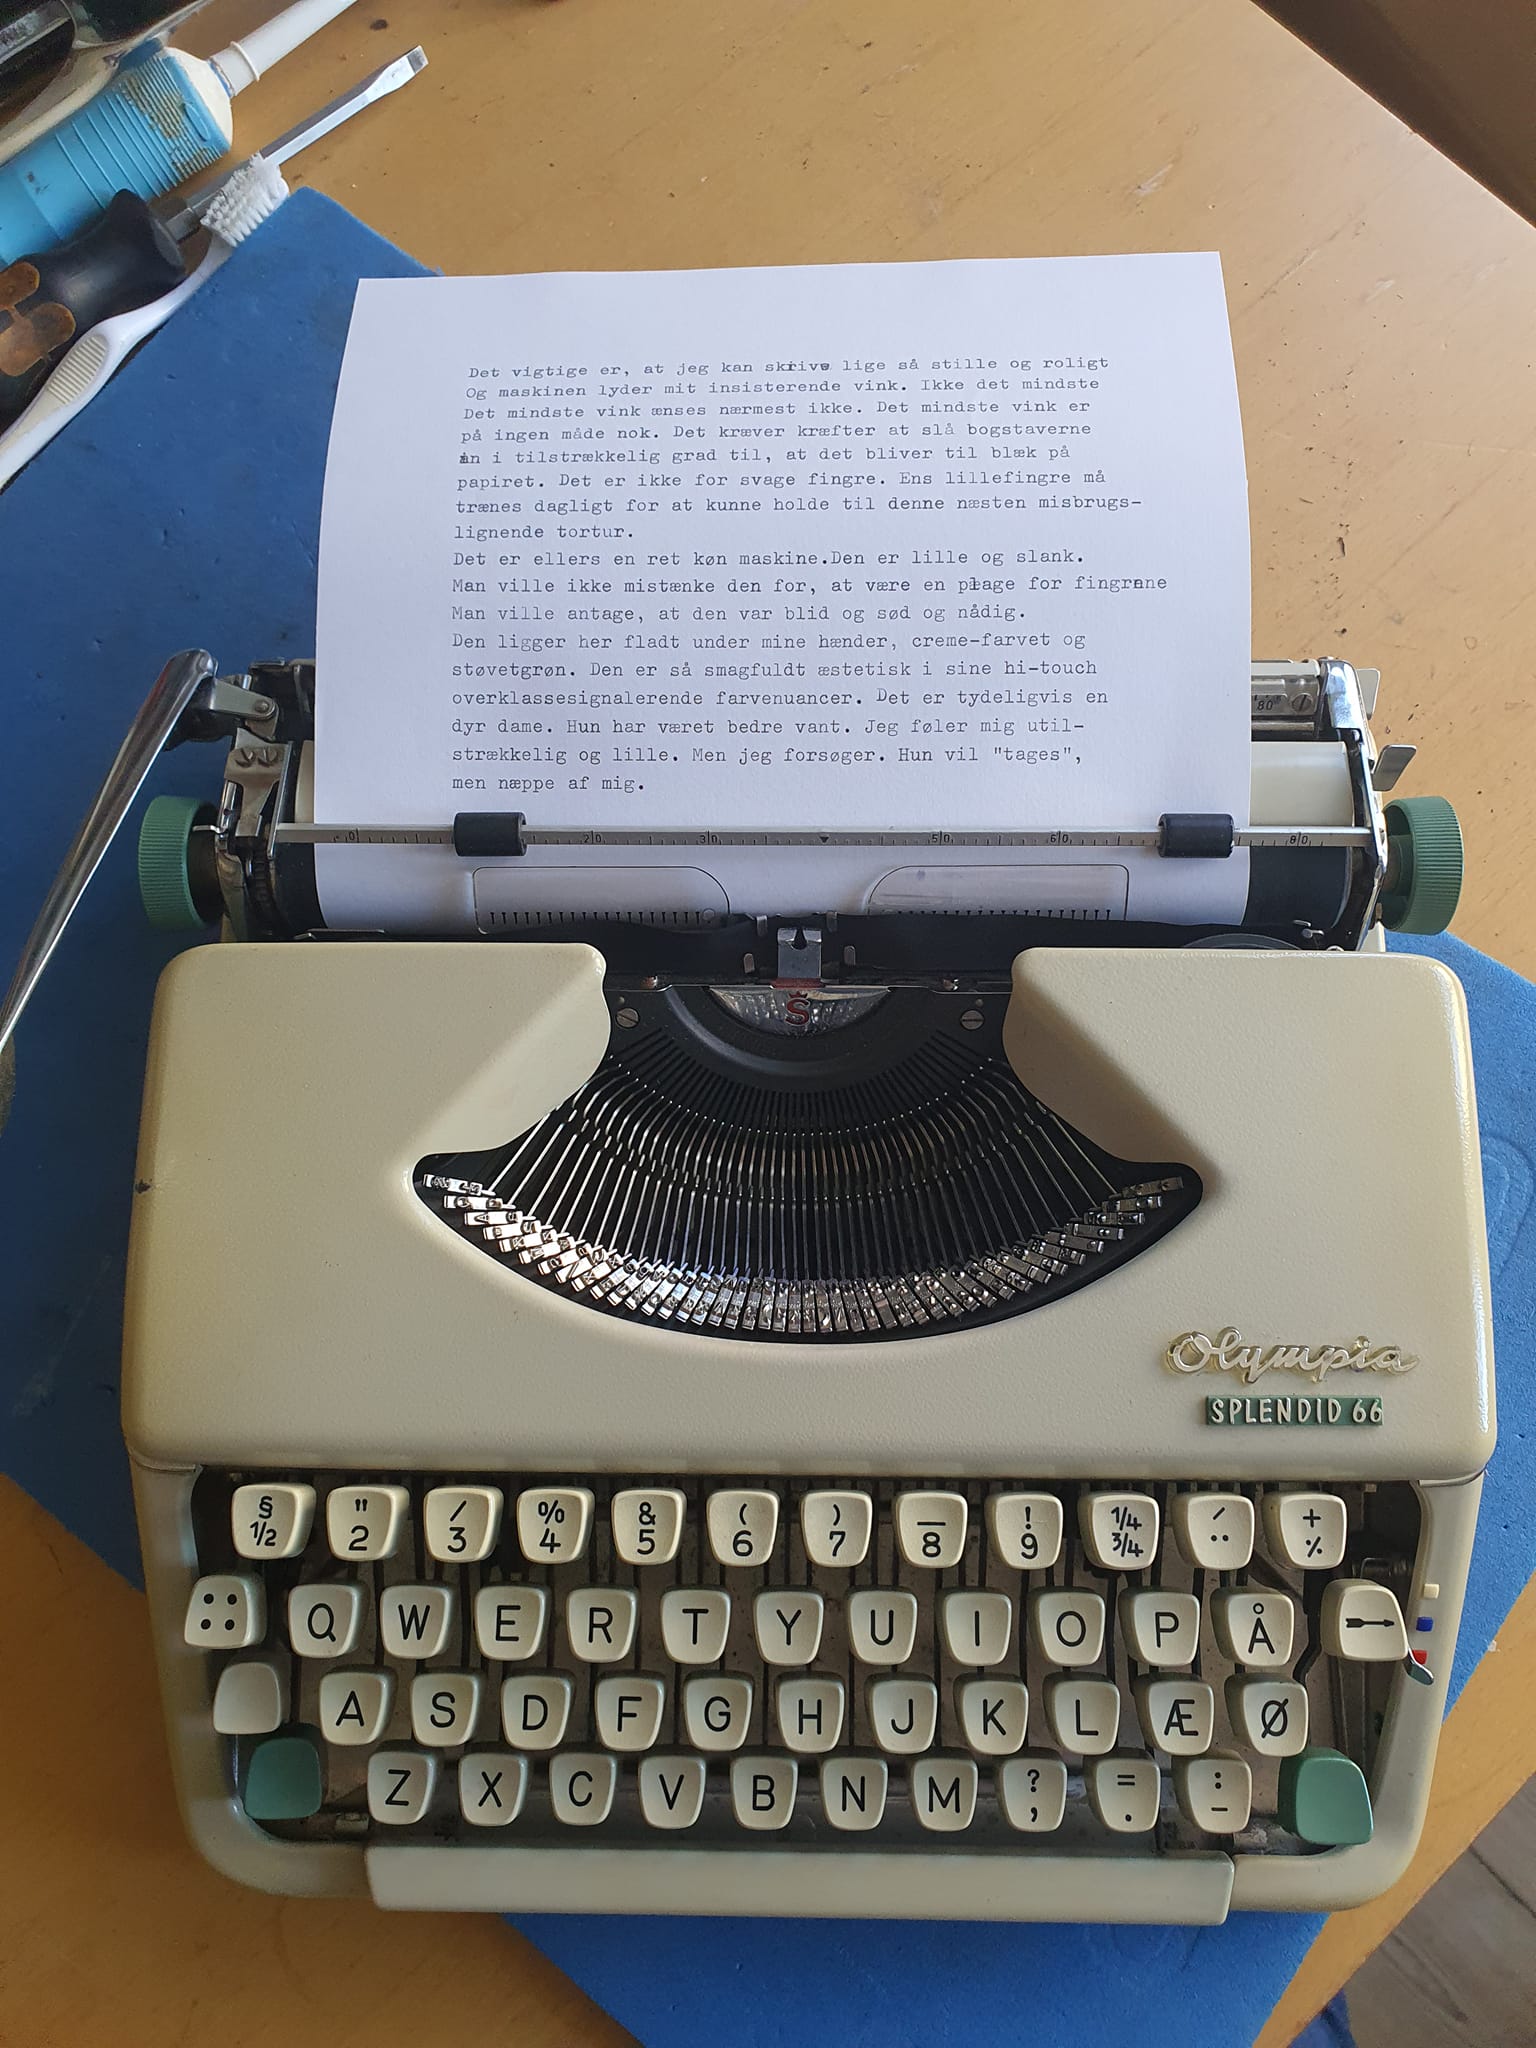 Olympia-splendid-66-skrivemaskine